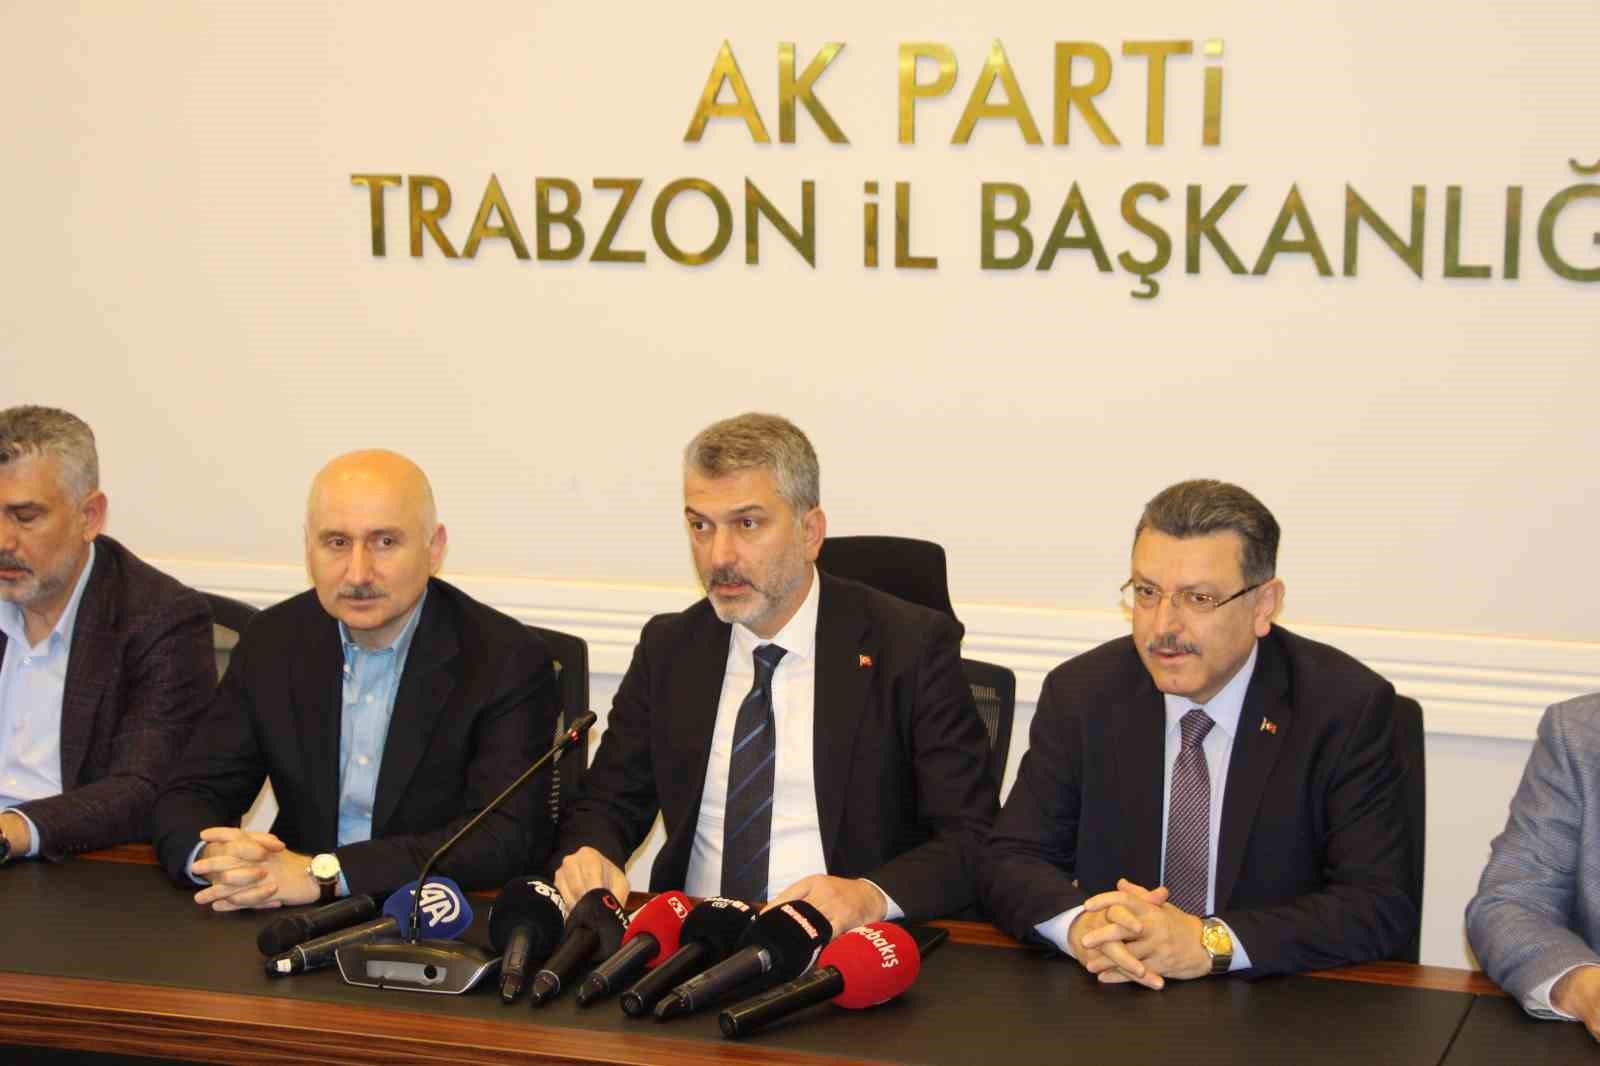 Trabzon AK Parti’nin büyükşehirlerdeki kalesi oldu
